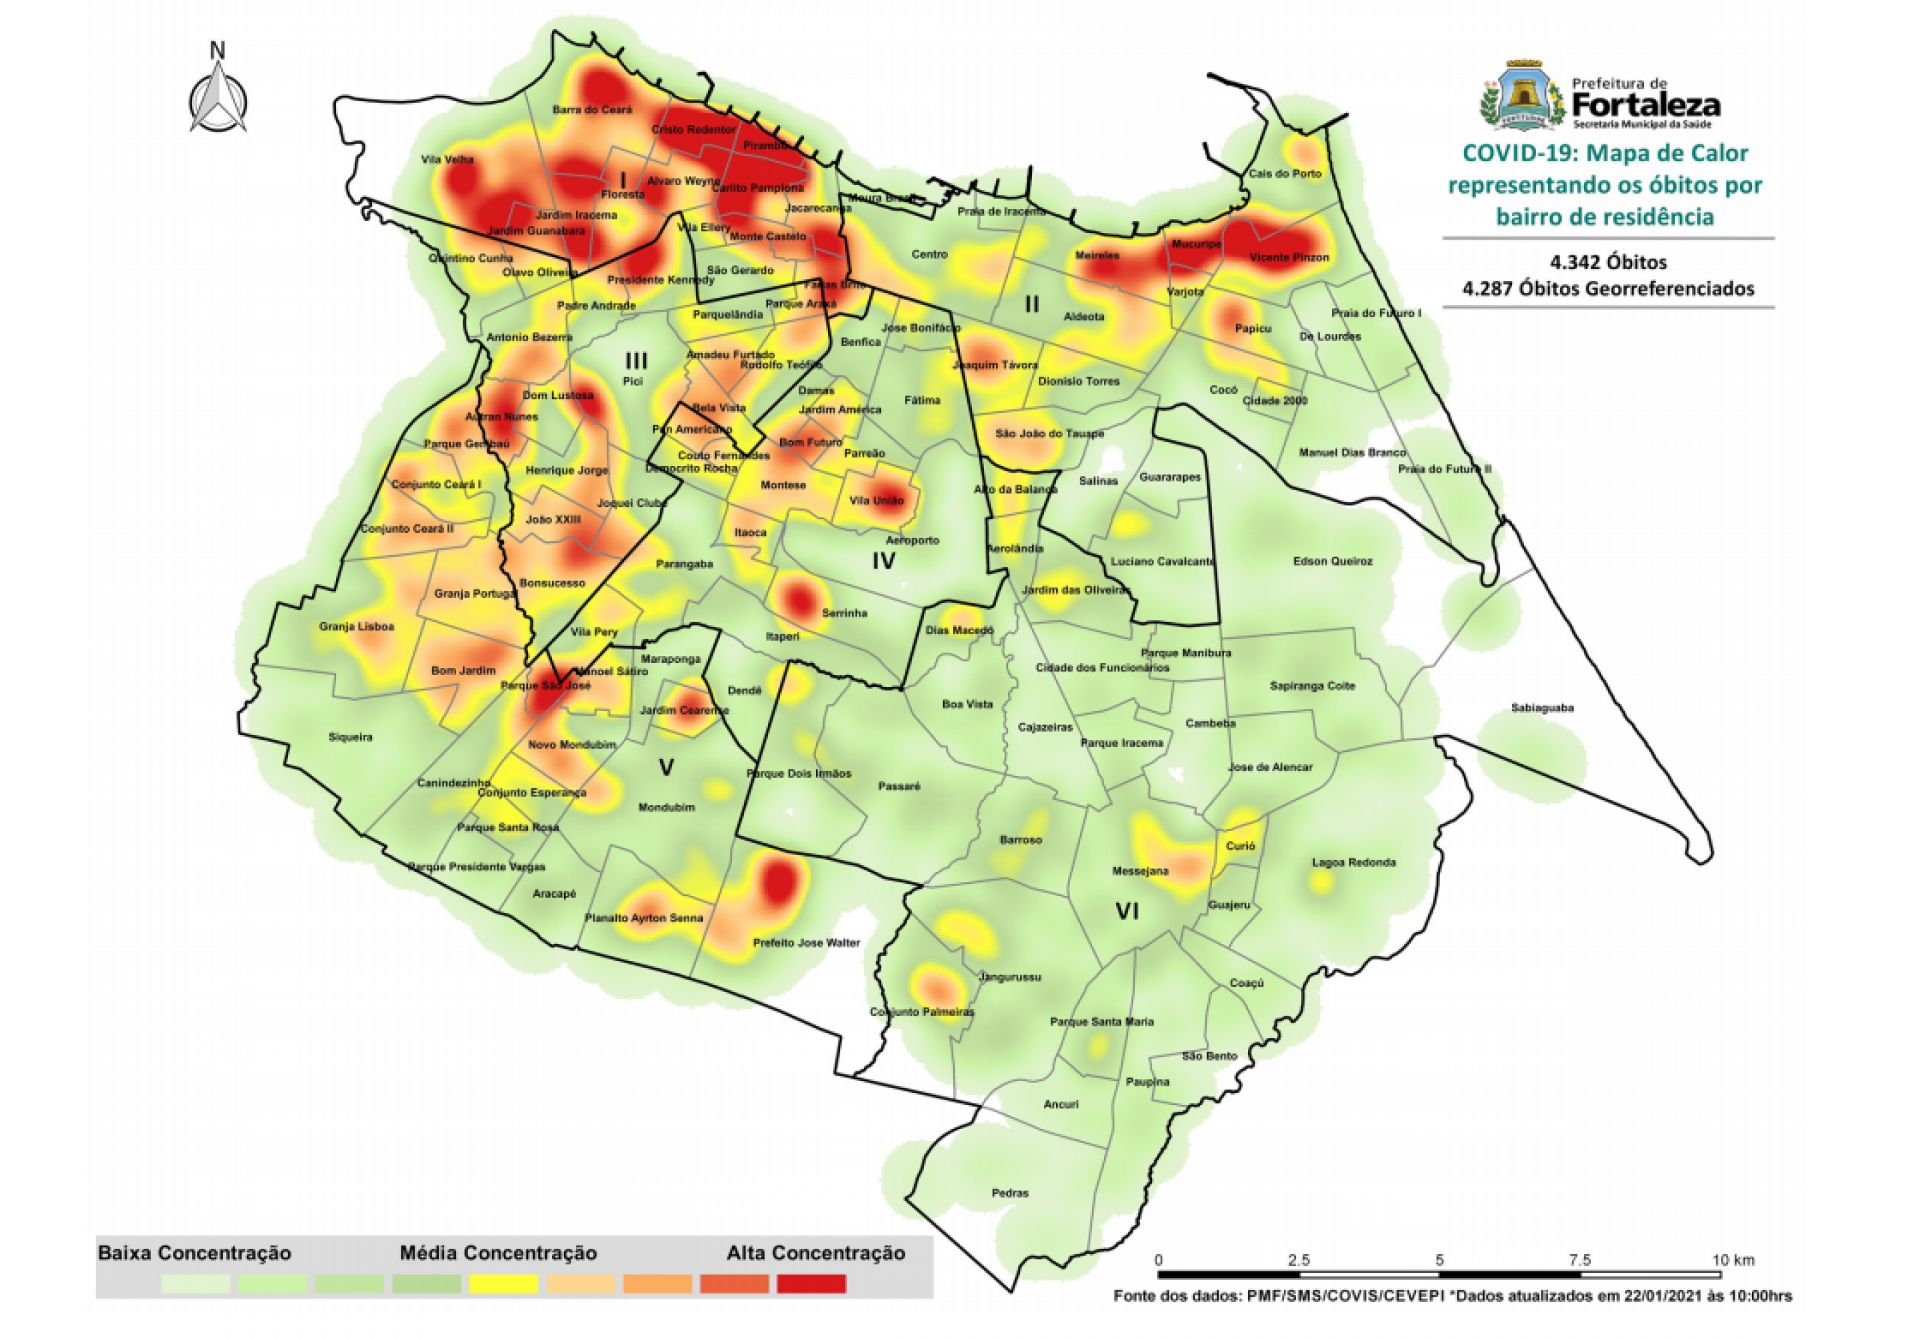 Mapa mostra bairros de Fortaleza com maior concentração de óbitos em decorrência da pandemia.